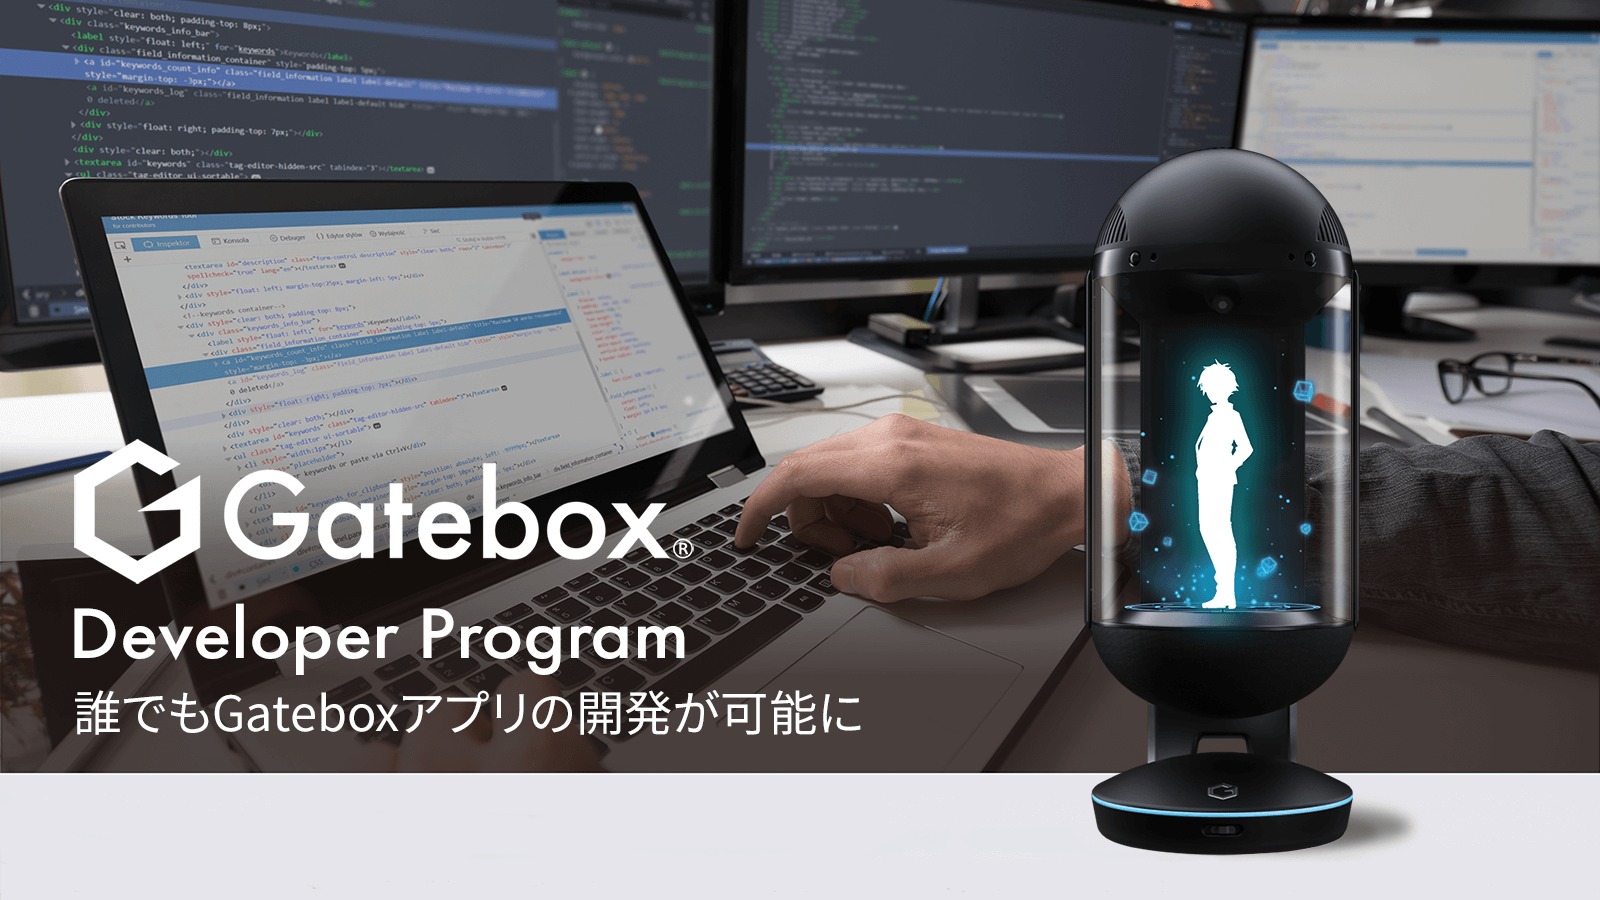 インタビュー 「Gatebox株式会社 Developer Program プラットフォーム構築」